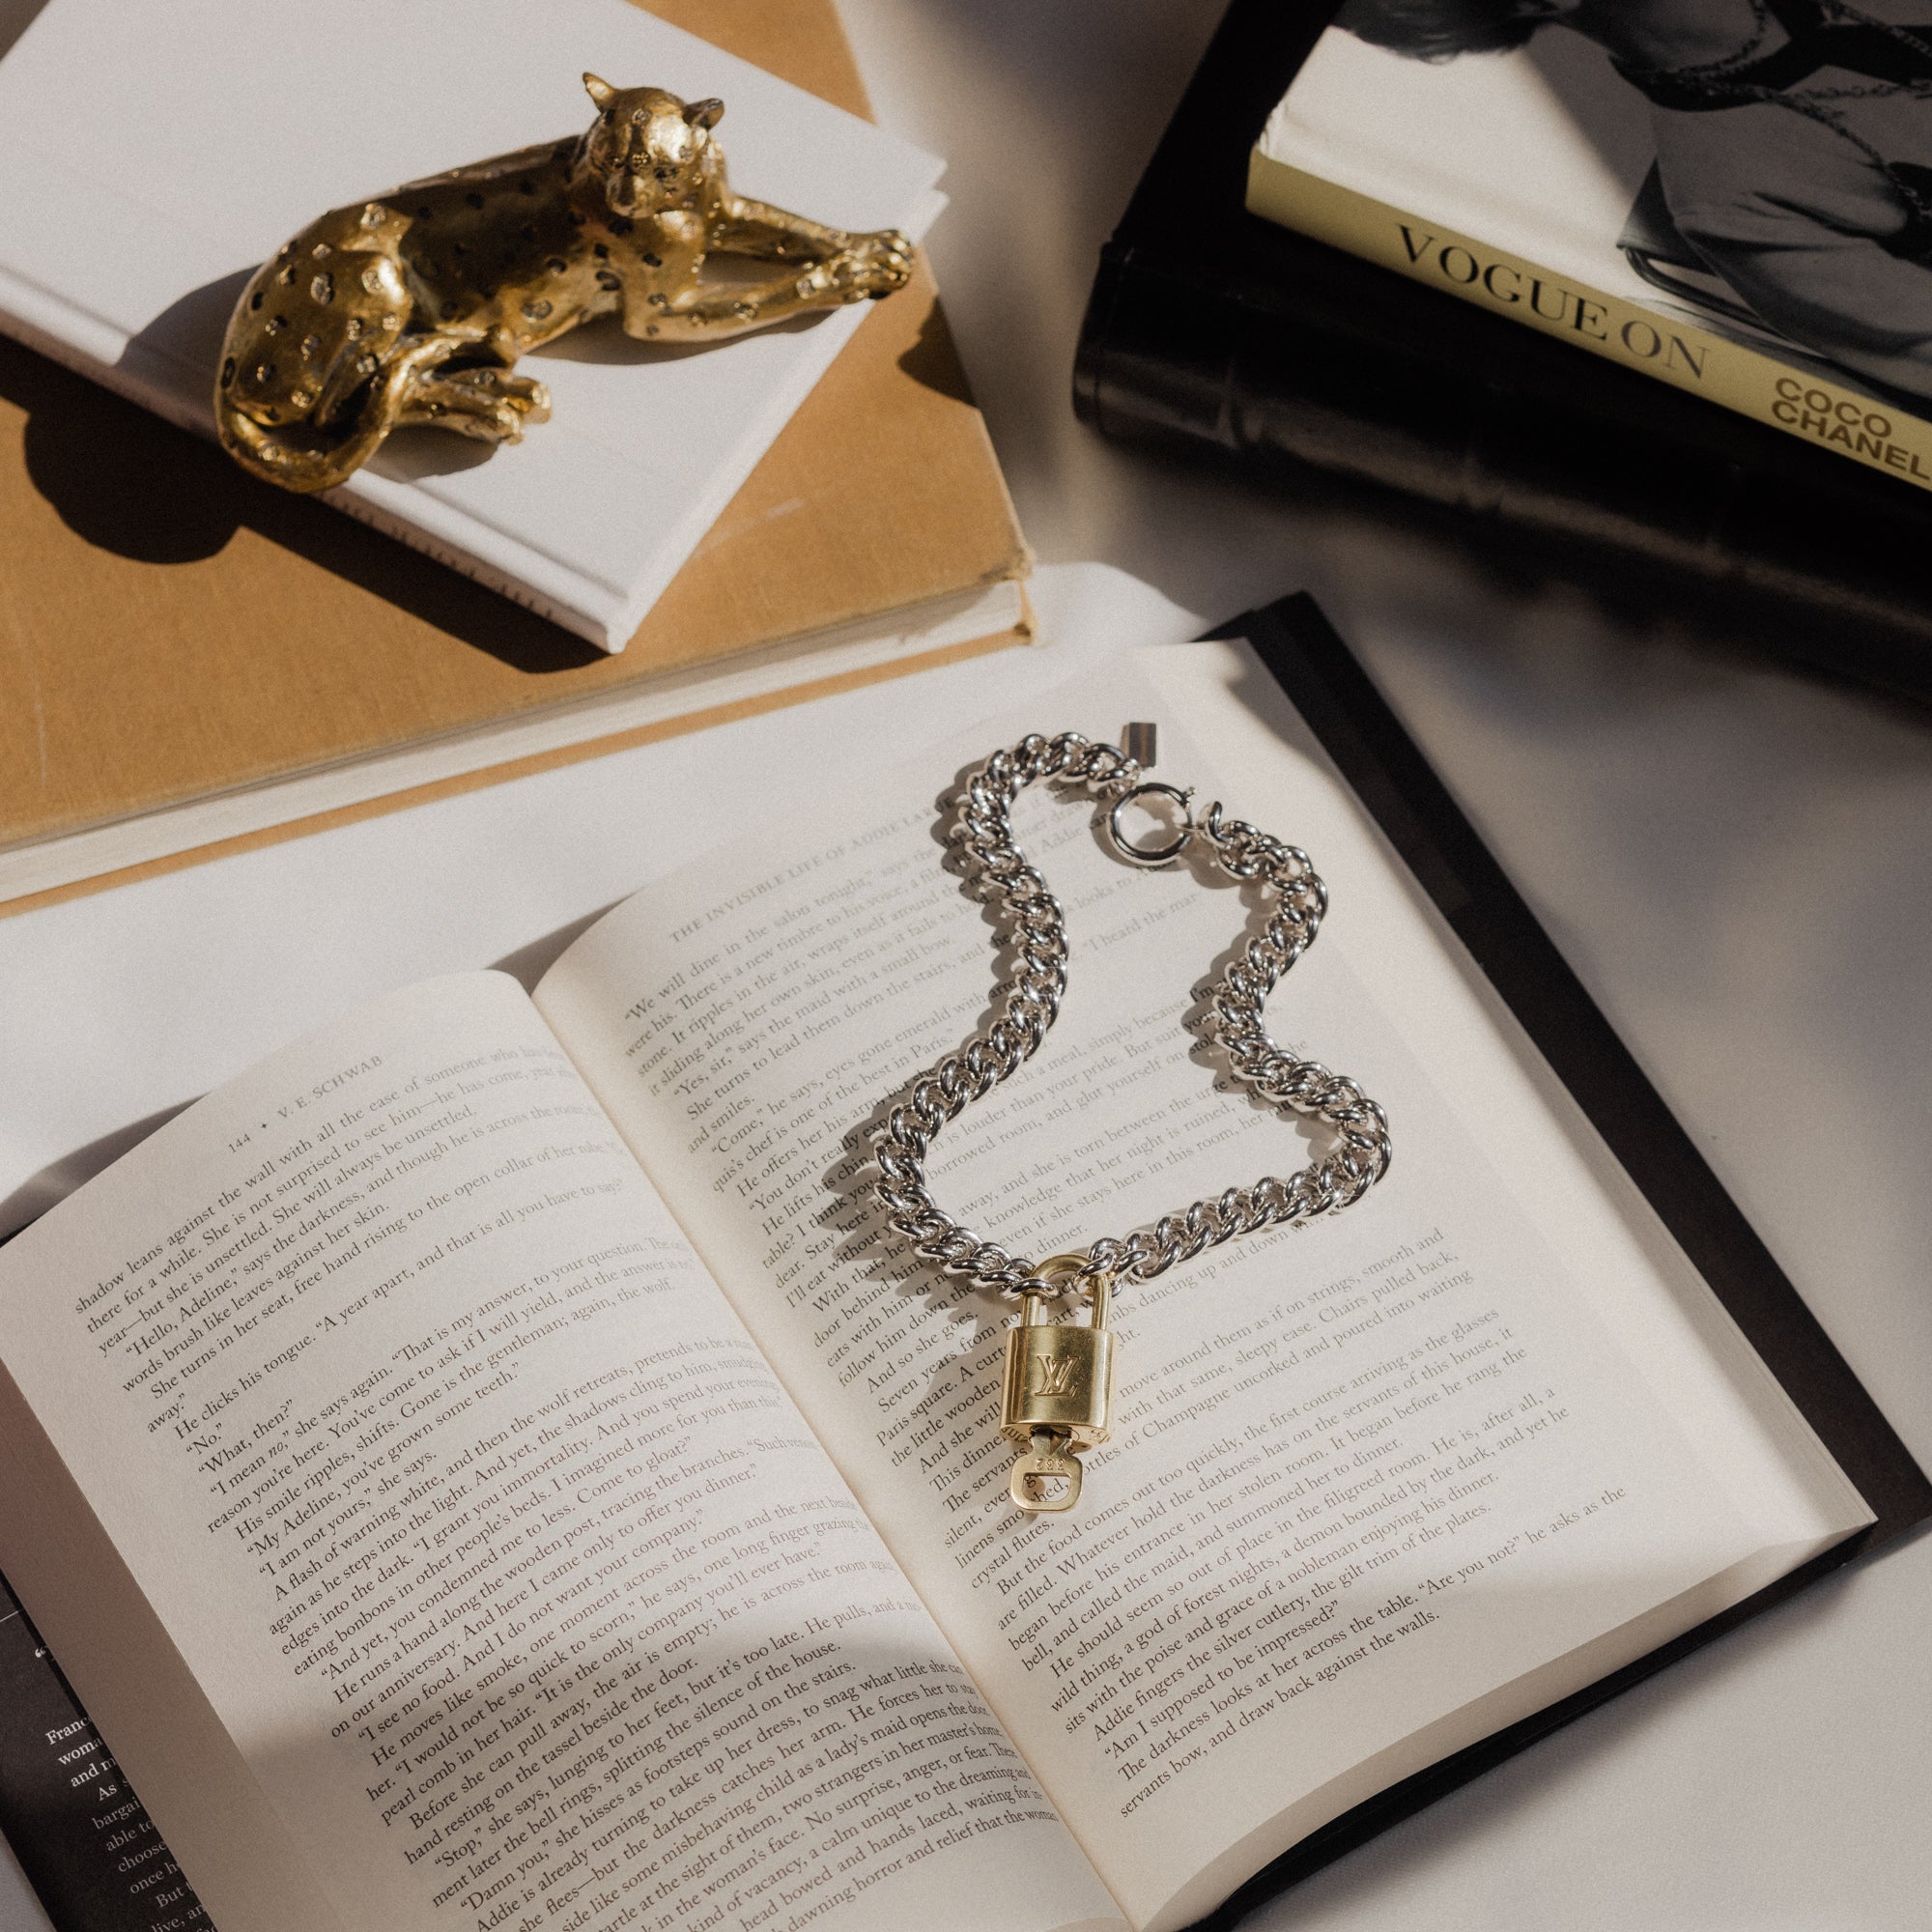 Vintage Louis Vuitton Lock Necklace 2.0